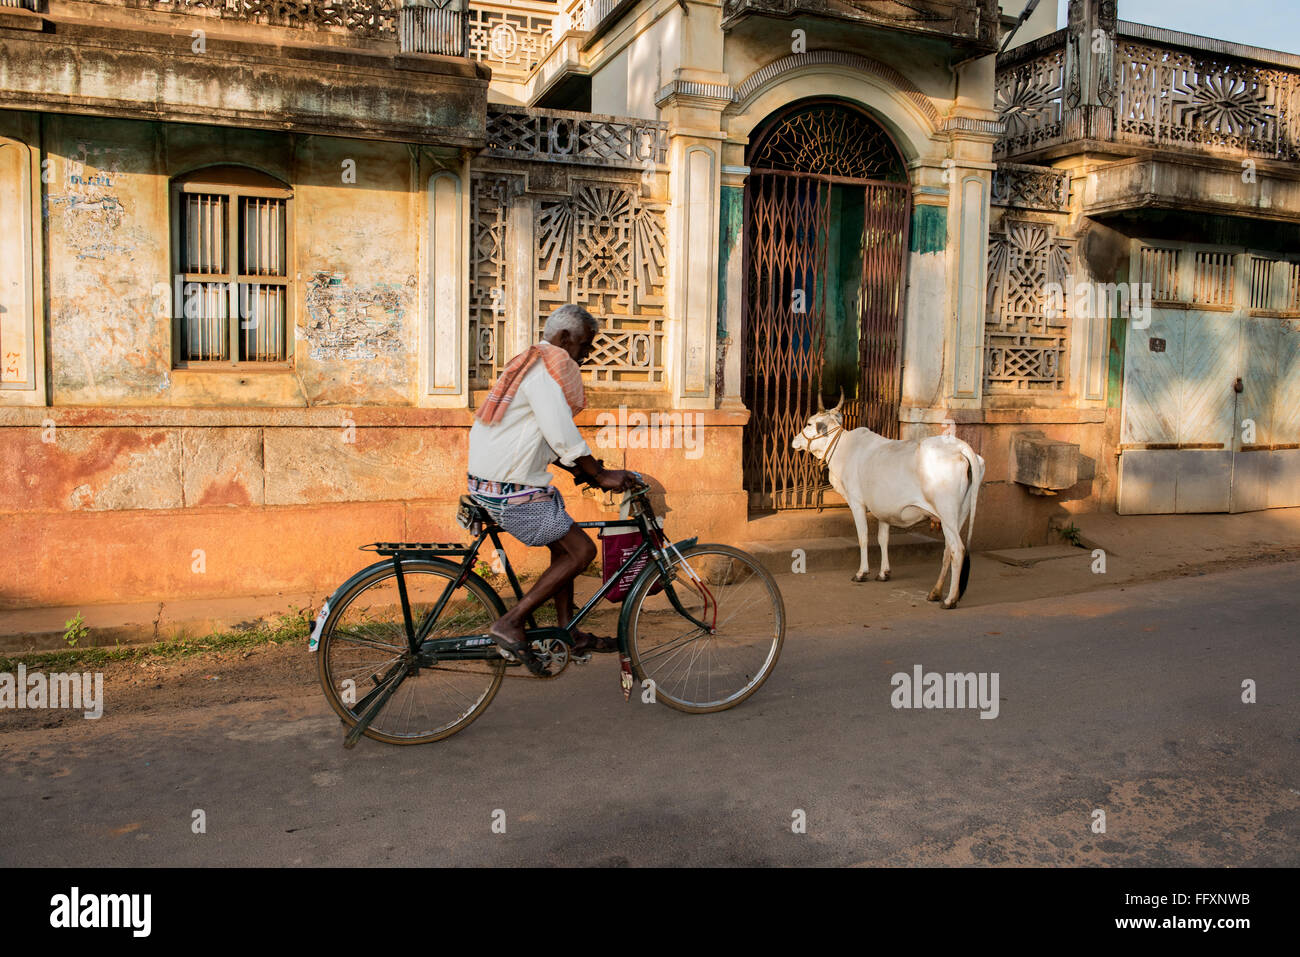 Un Indien passé cycles un merchants house et un taureau dans le village d'Kundrikudy près de Chettinad, Tamil Nadu, Inde Asie Banque D'Images